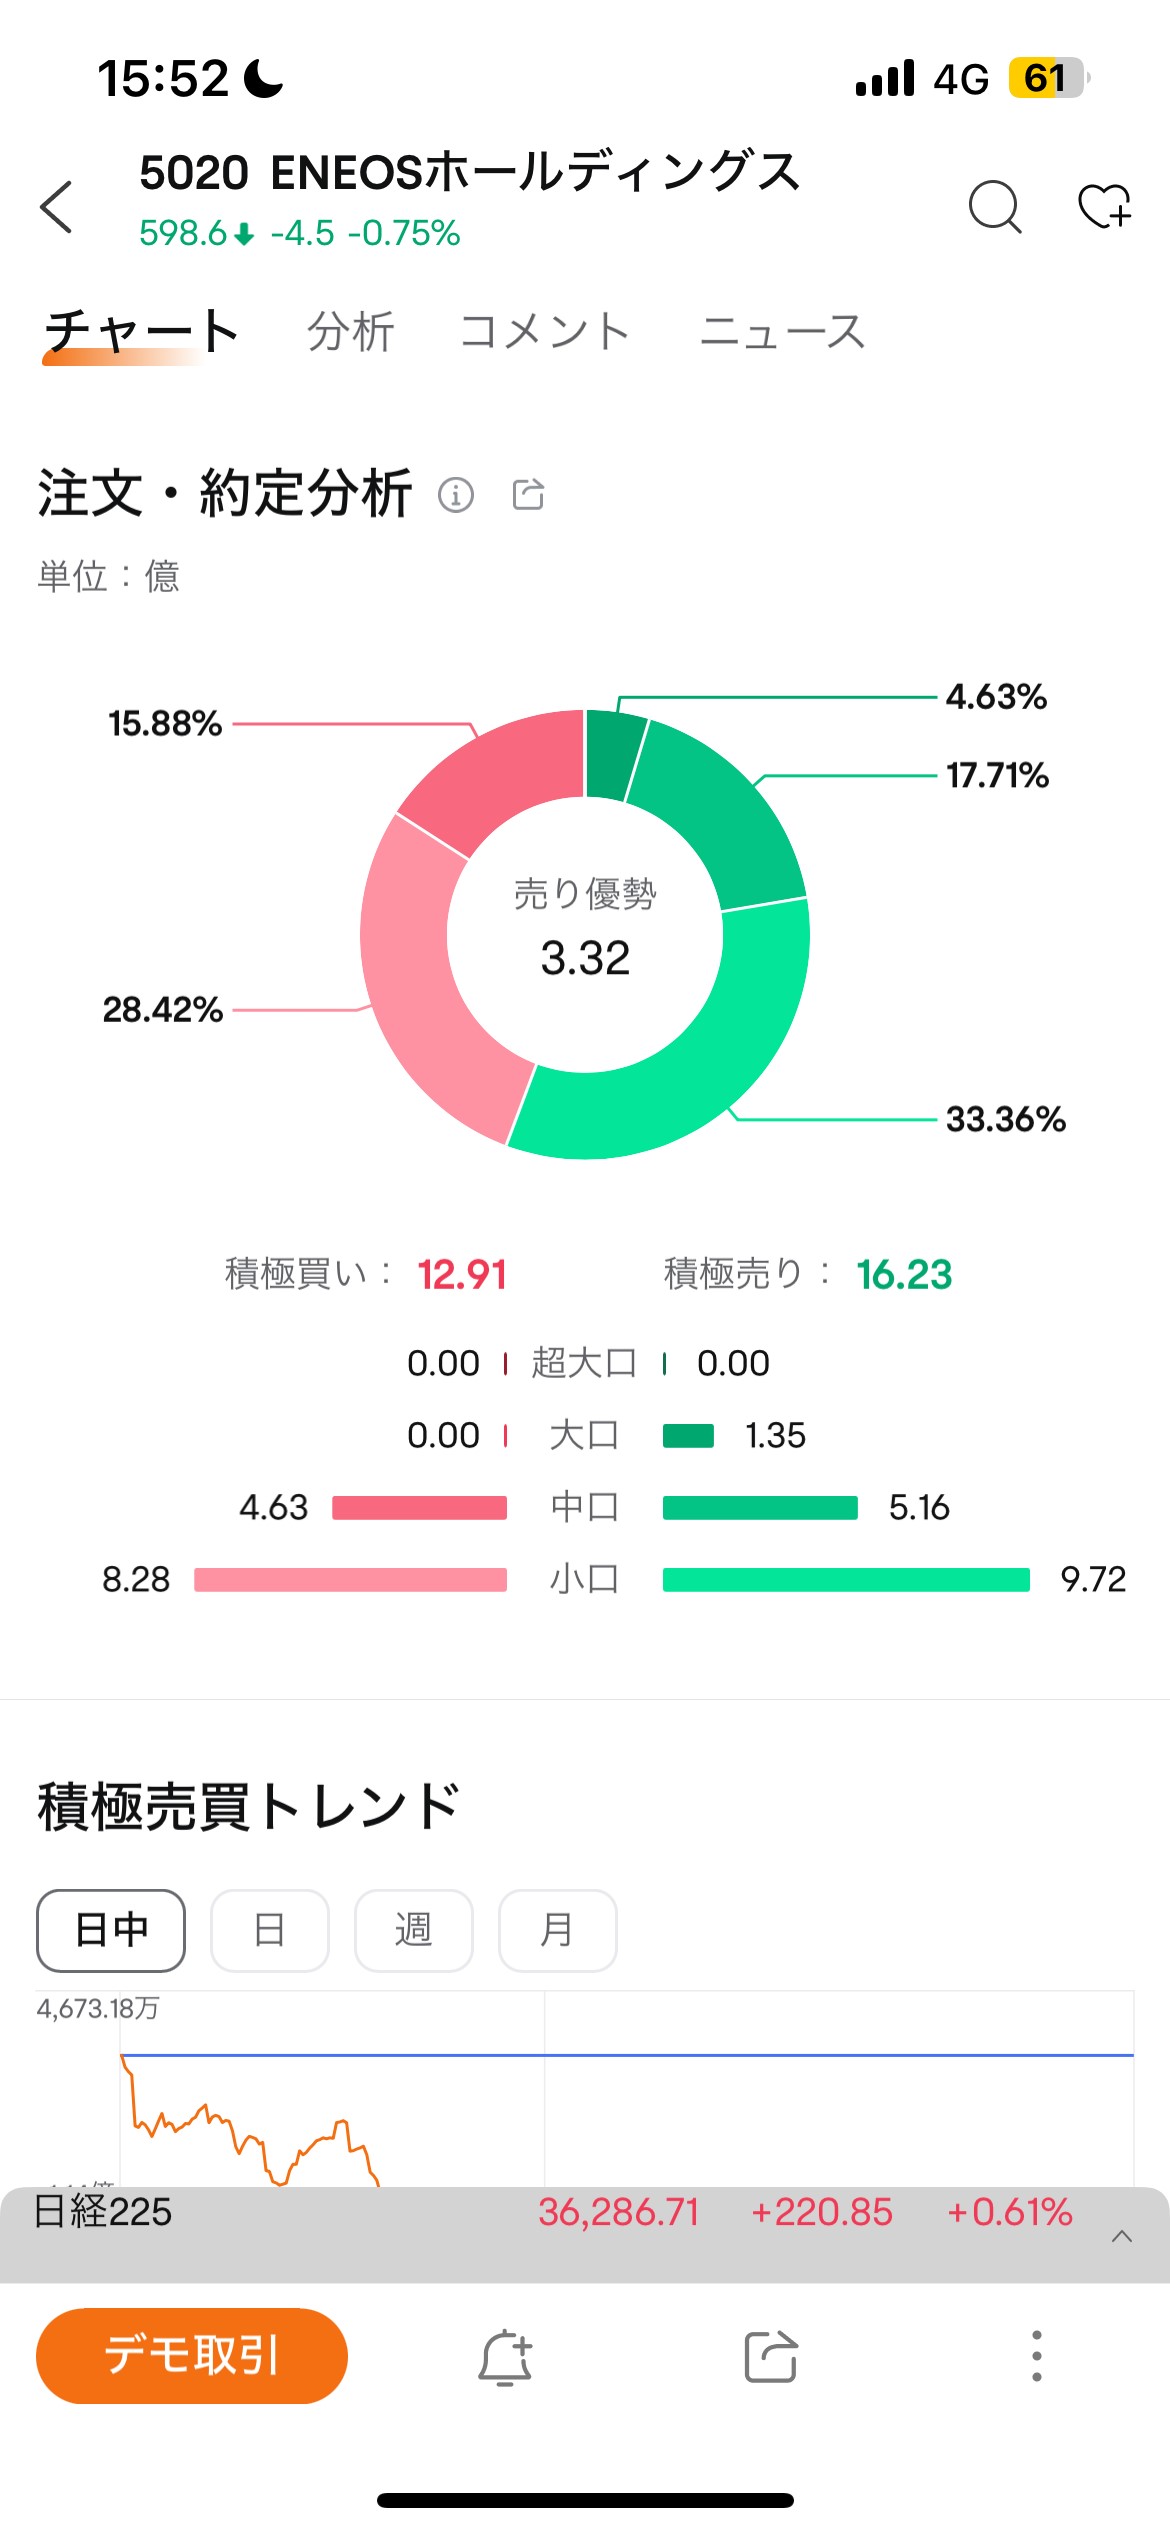 moomoo日本株アプリ画面